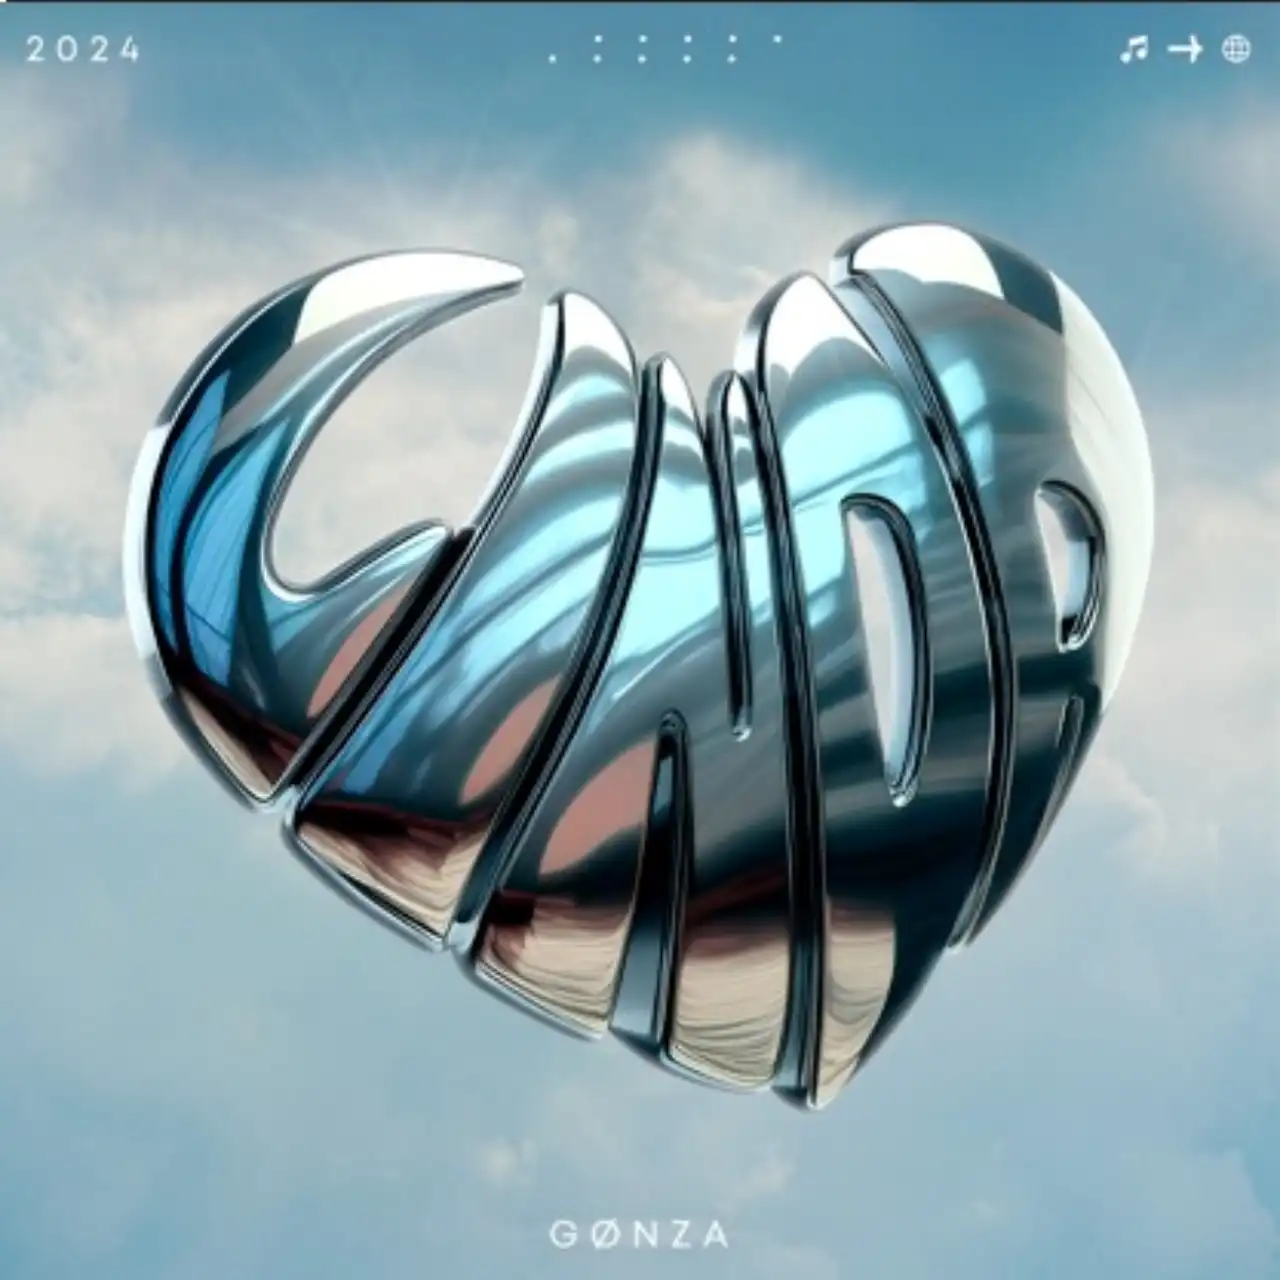 Gonza presenta su nuevo sencillo «Linda»